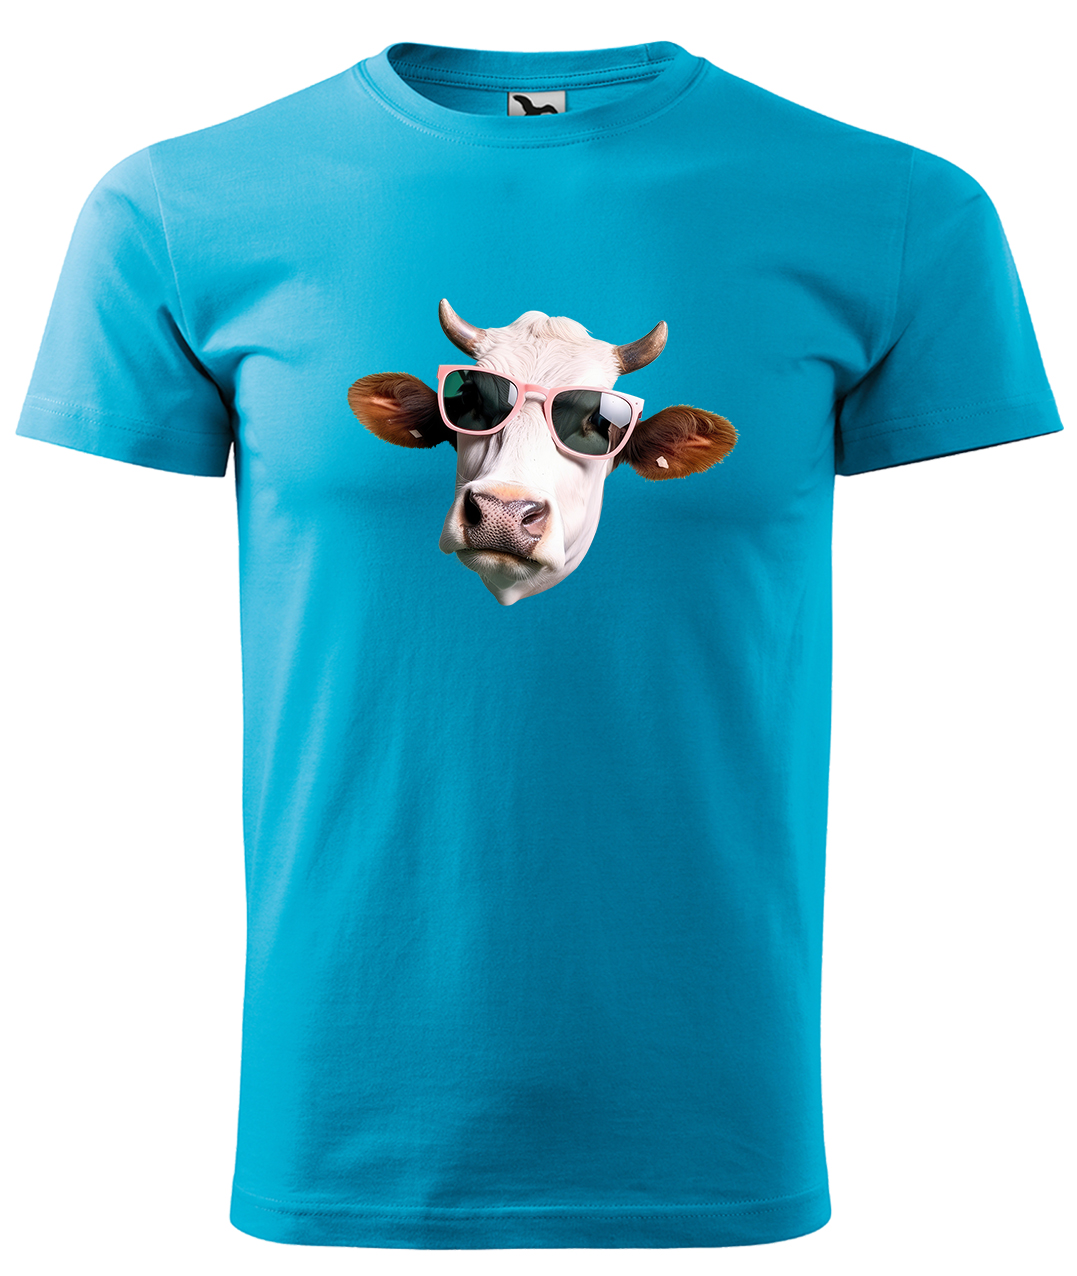 Dětské tričko s krávou - Kráva v brýlích Velikost: 10 let / 146 cm, Barva: Tyrkysová (44), Délka rukávu: Krátký rukáv